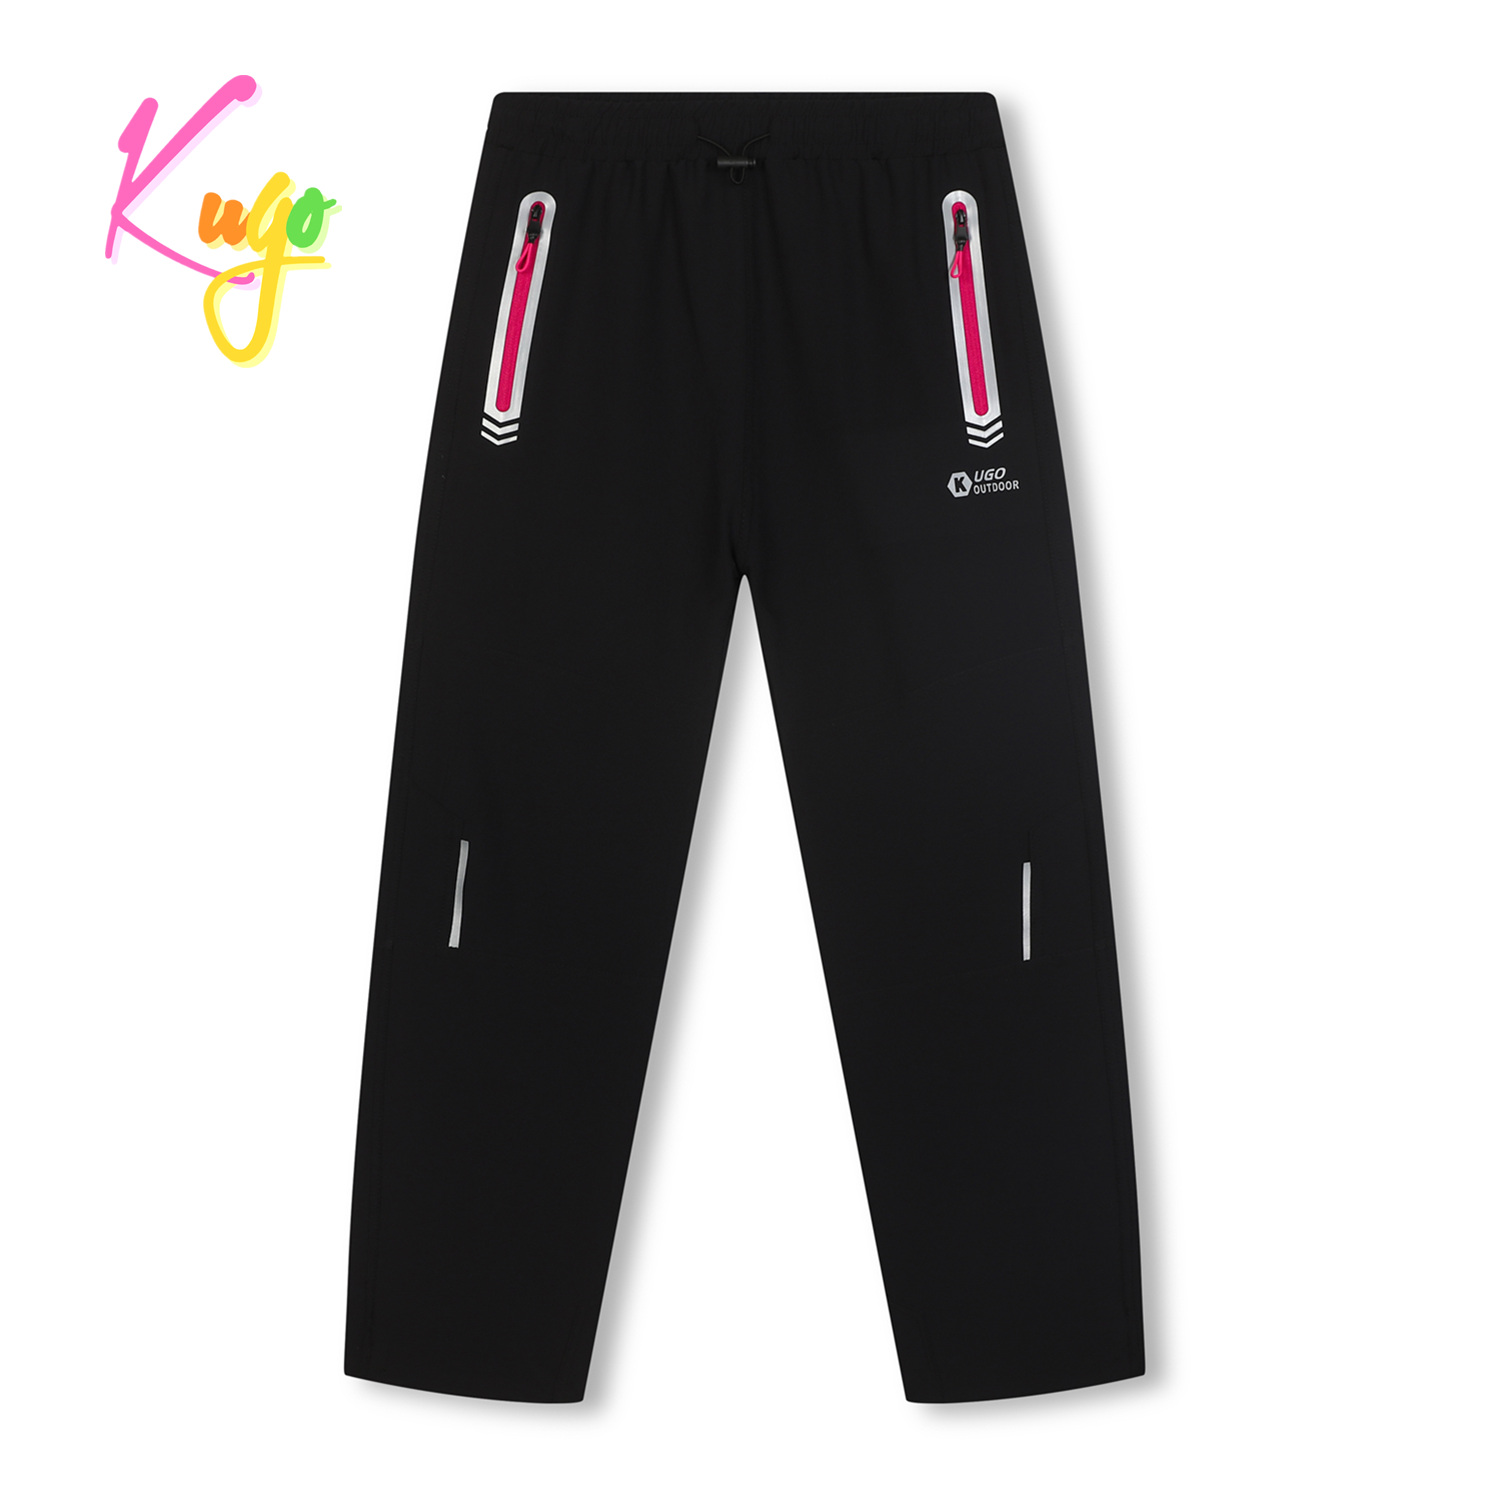 Dívčí softshellové kalhoty - KUGO HK7578, černá / růžové zipy Barva: Černá, Velikost: 146